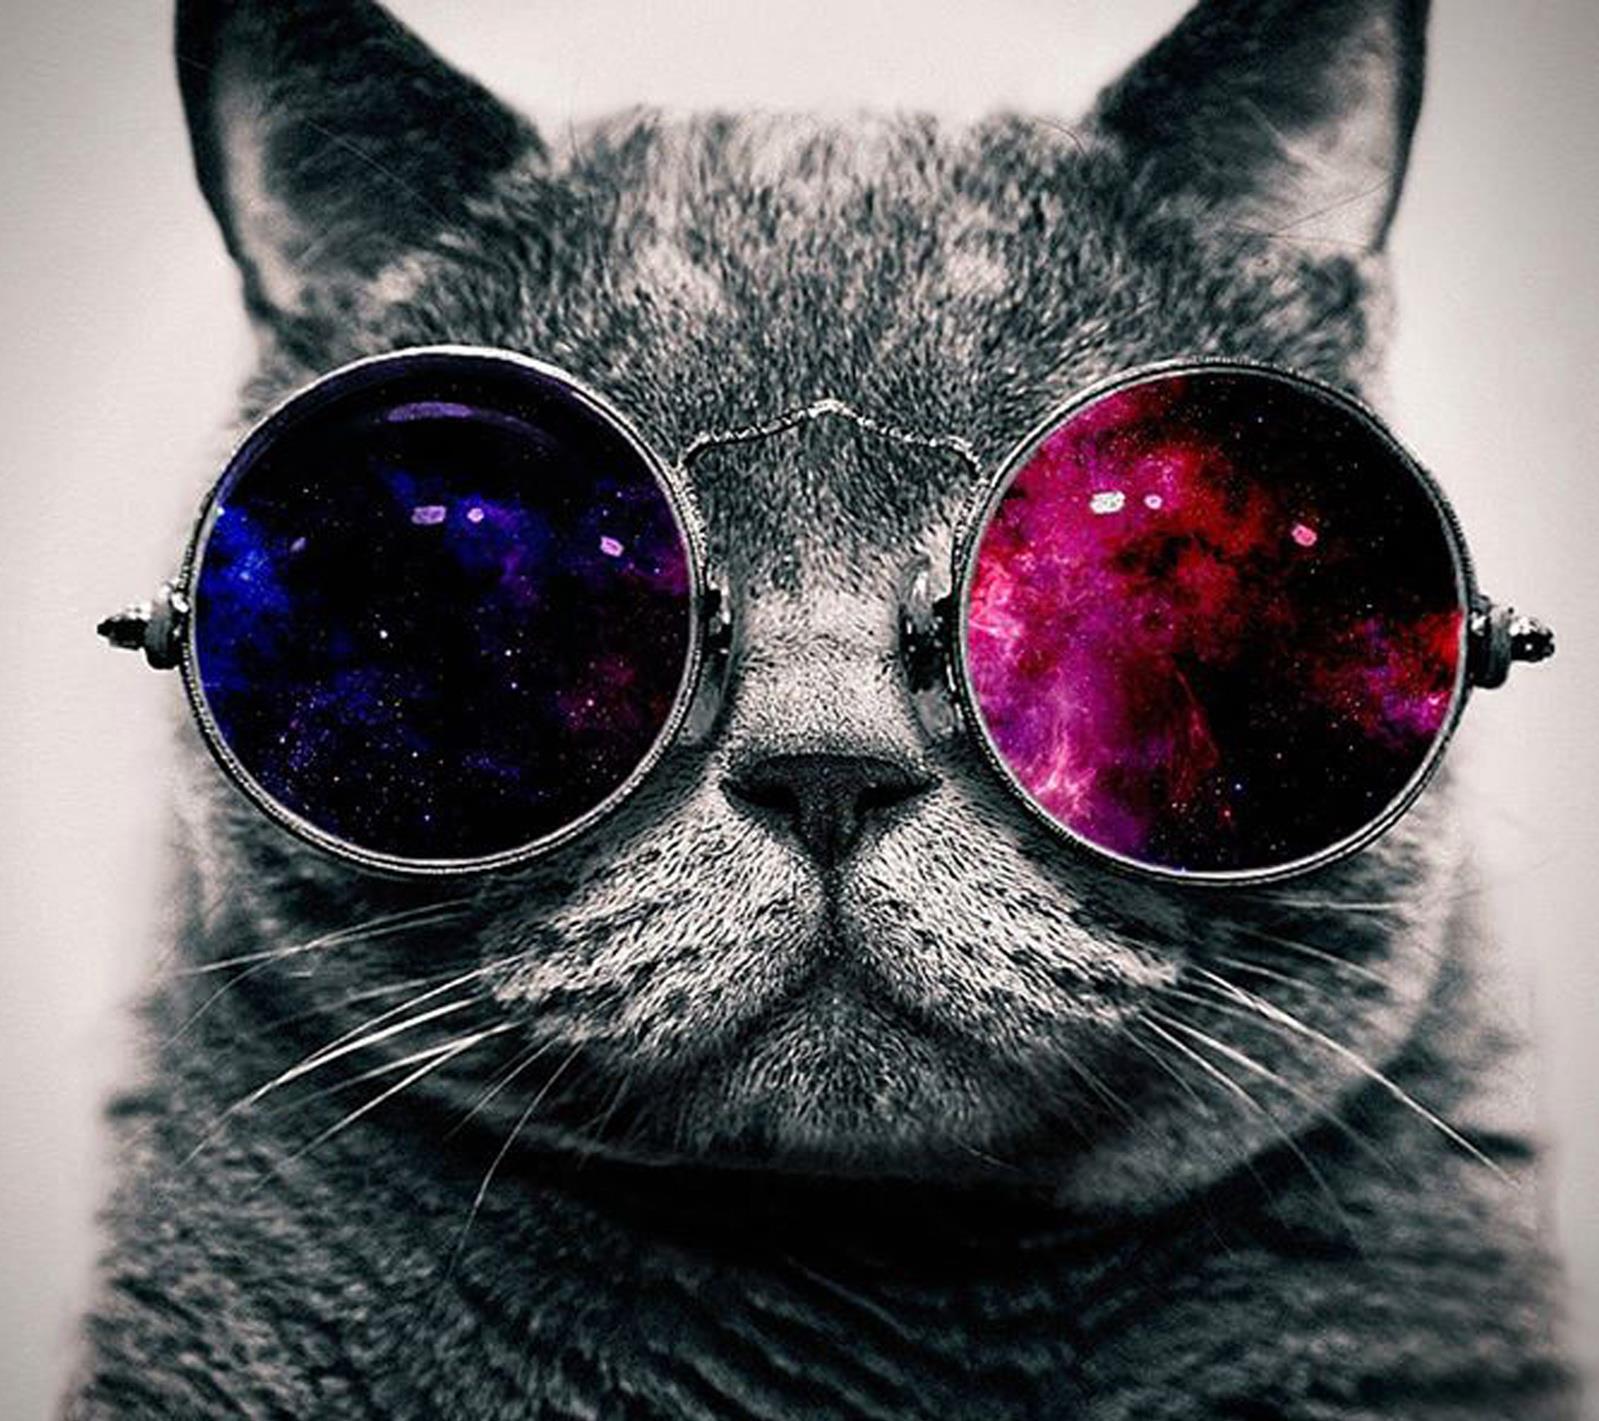 Un gatto con gli occhiali da sole - Sfondi per Android, i più belli da scaricare gratis